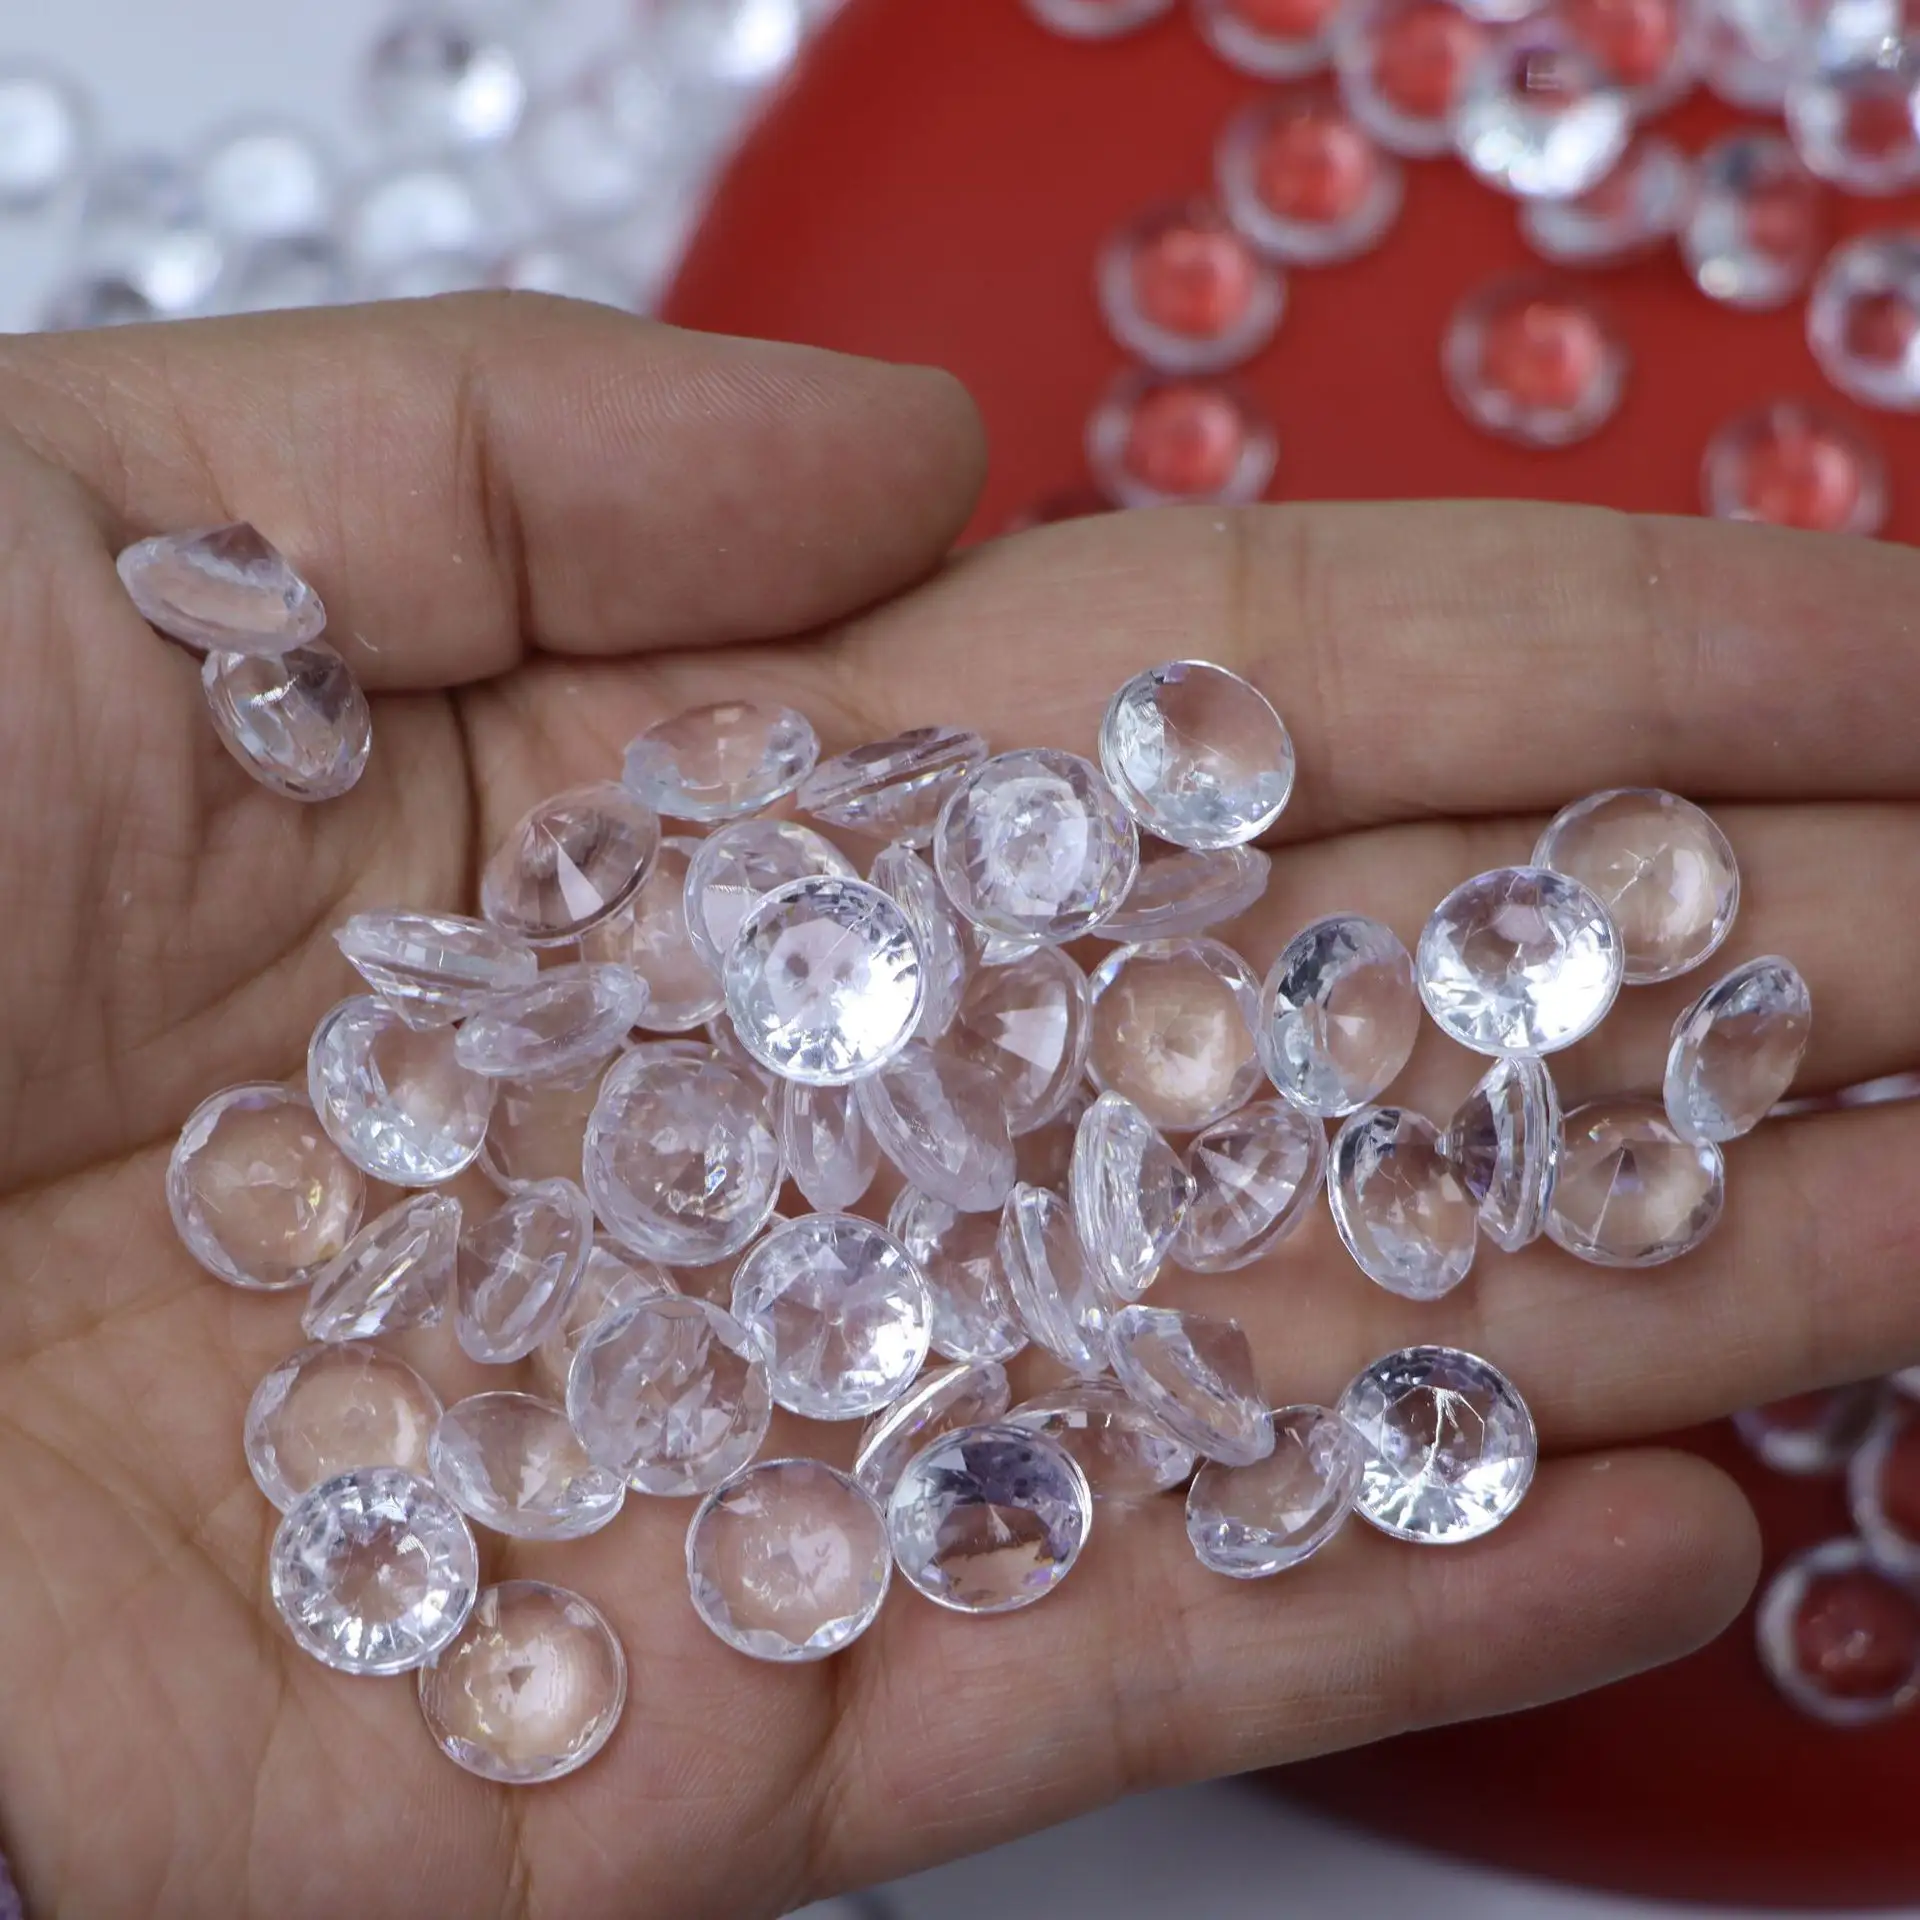 Hongzhi fábrica de diamante acrílico, tabela dispersa plástico contas de diamante para decoração de casamento enchimento de vaso